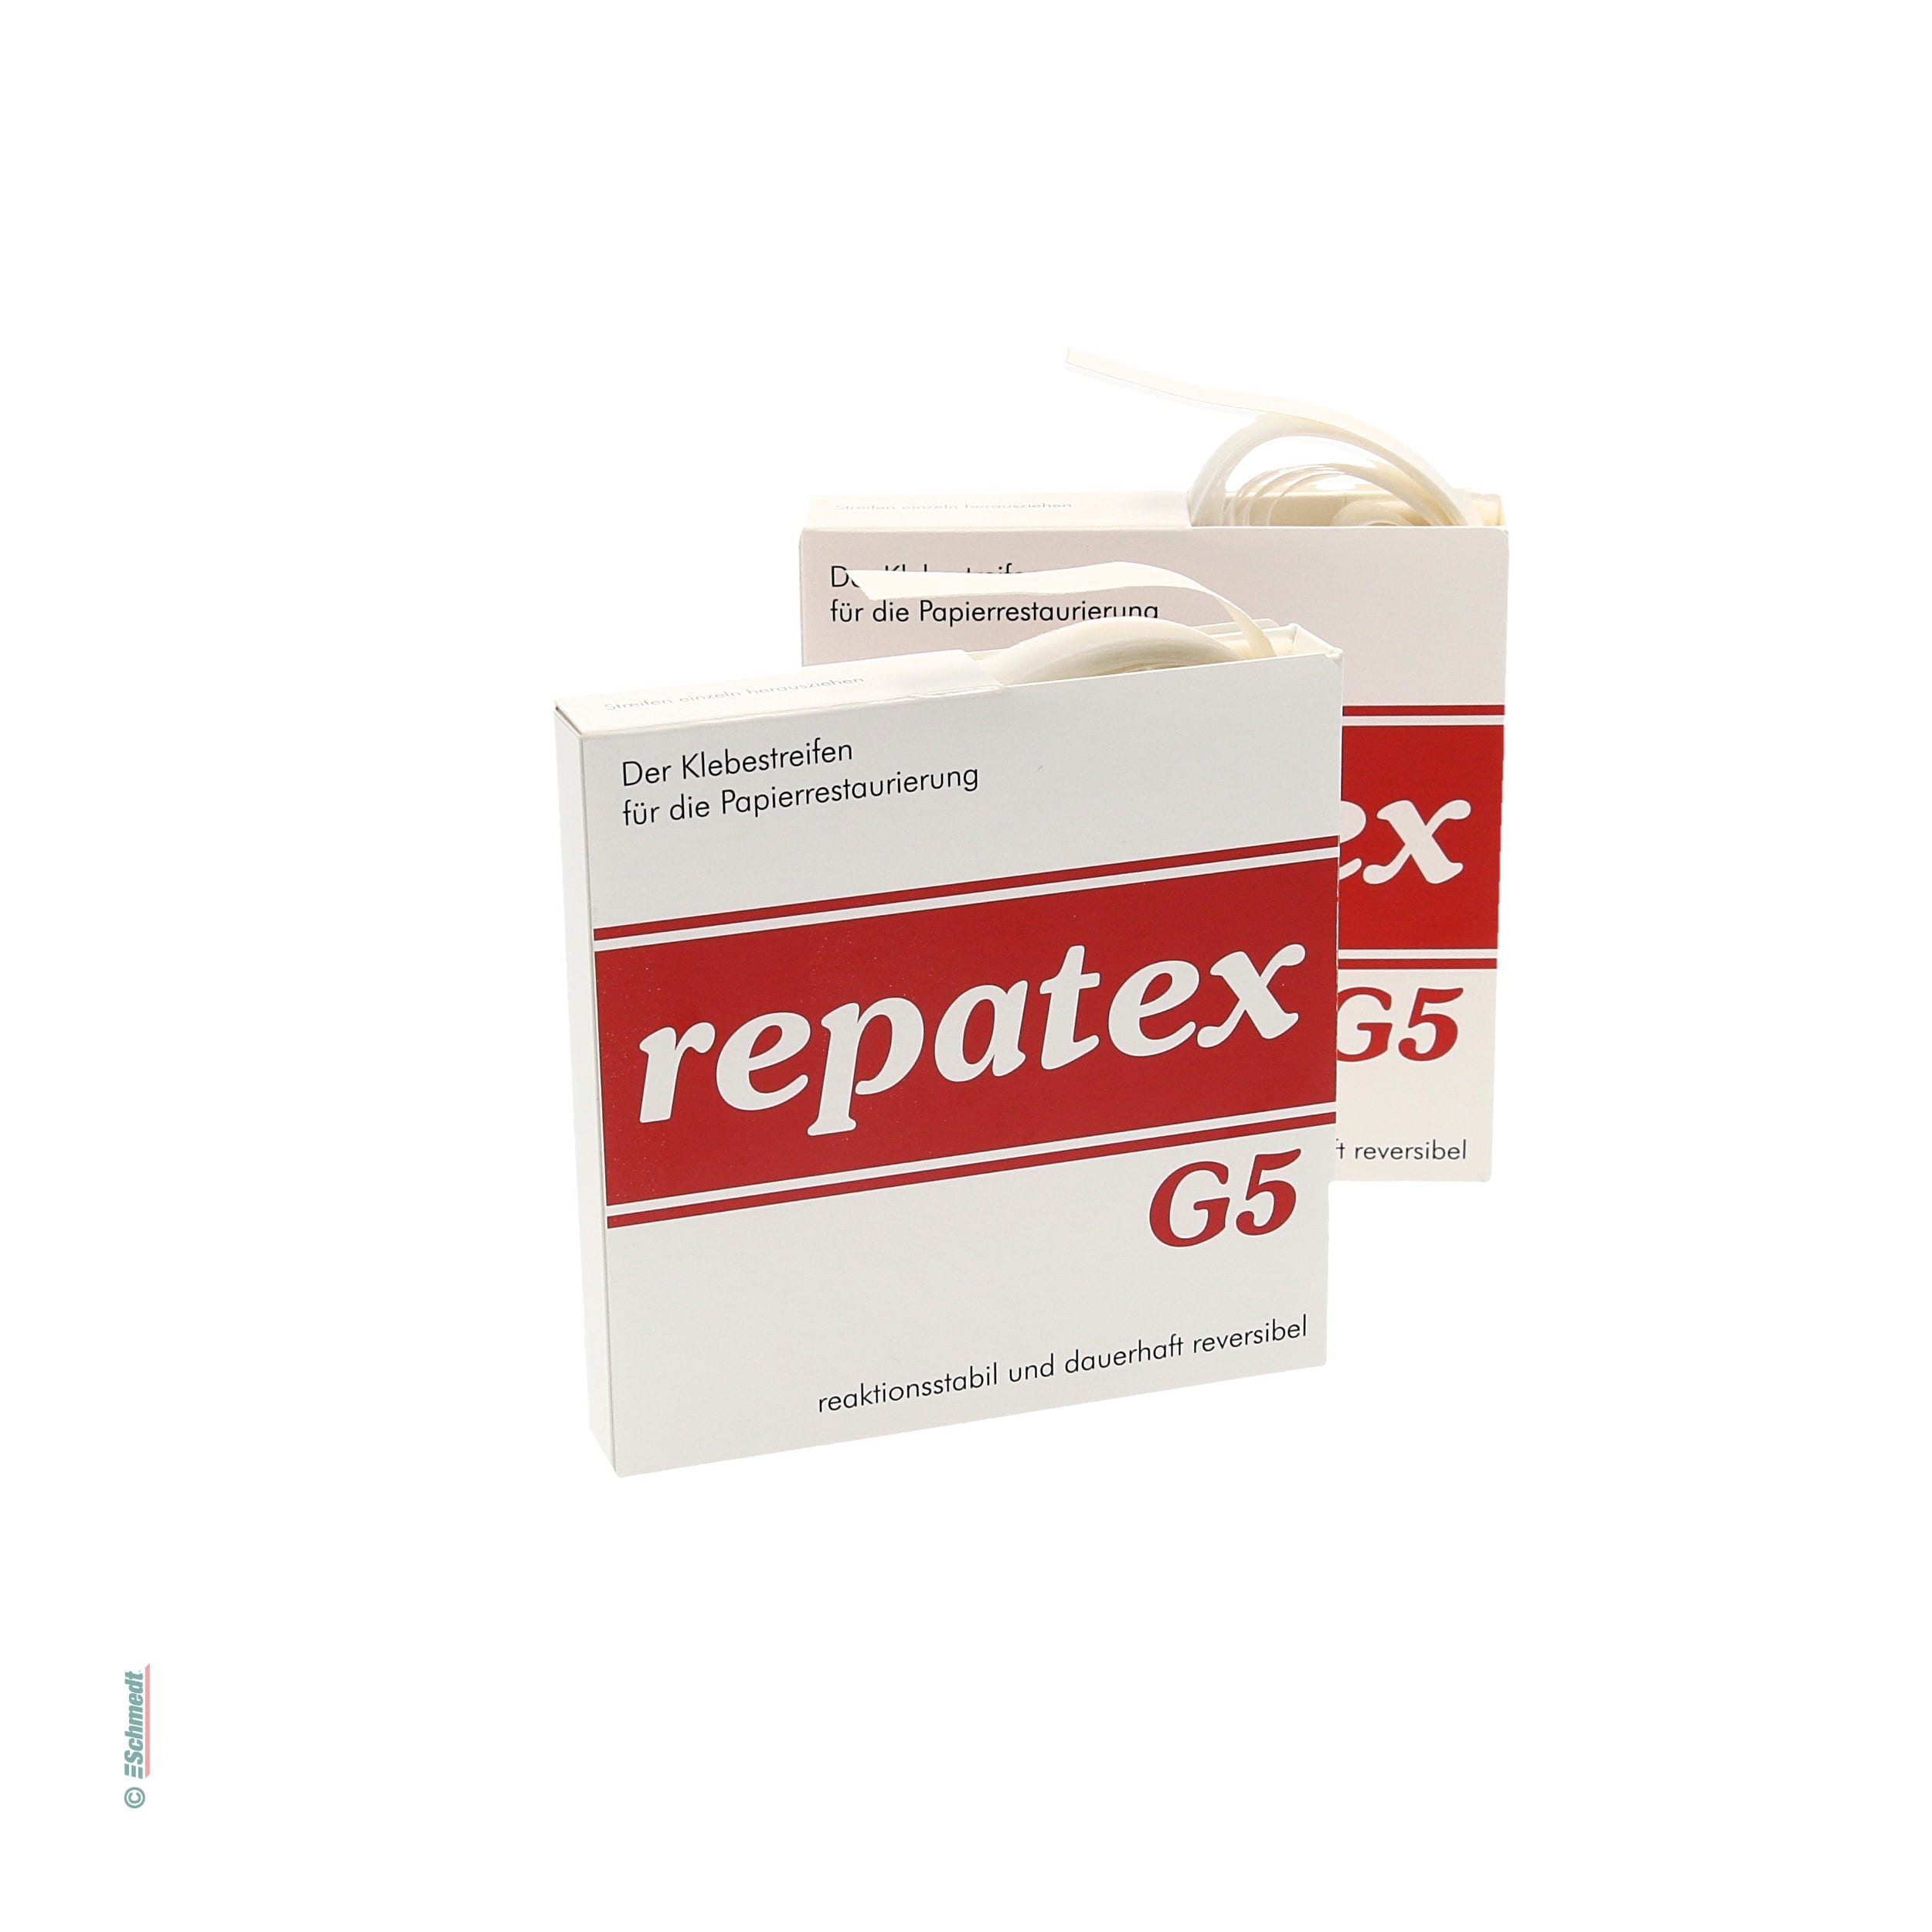 RepaTex G5 - Tiras para reparar, engommadas - muy transparente - Paquete con 20 tiras - para reparaciones exigentes de objetos delicados de ...